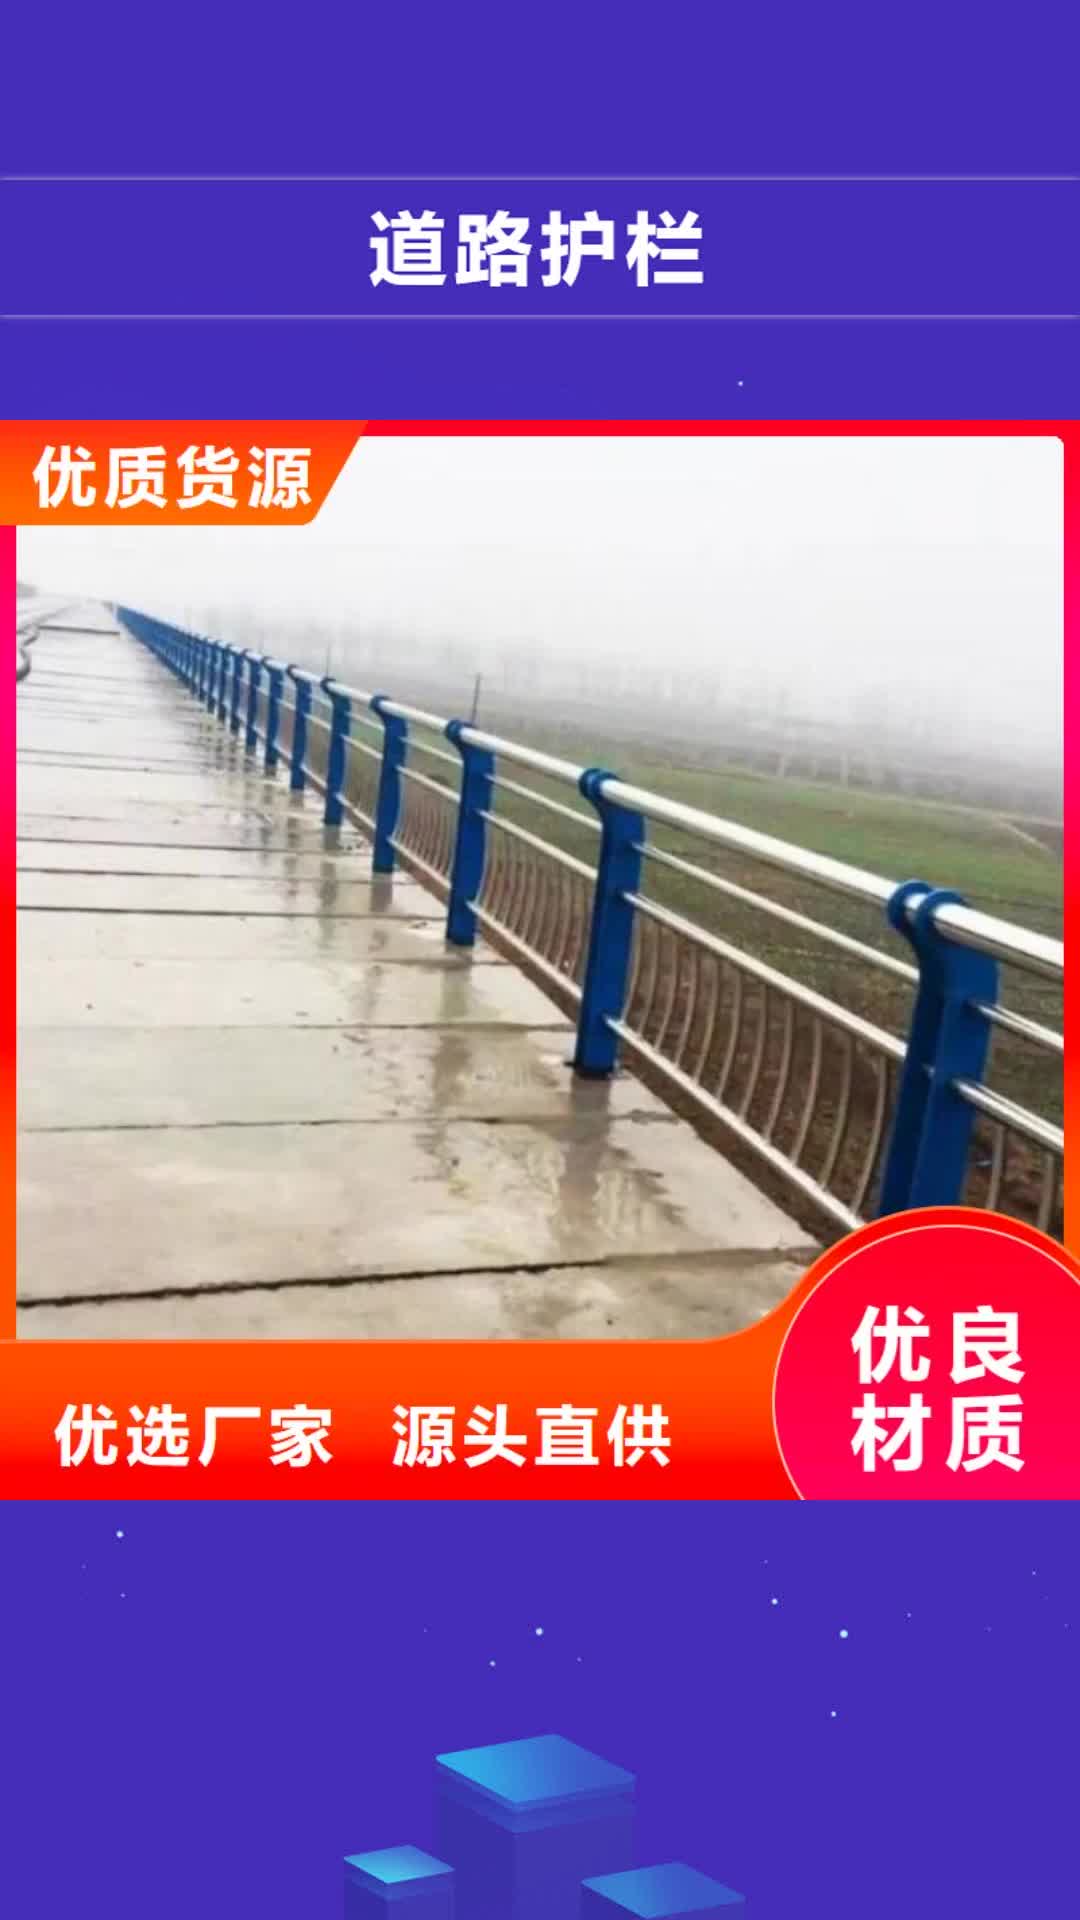 亳州 道路护栏的图文介绍